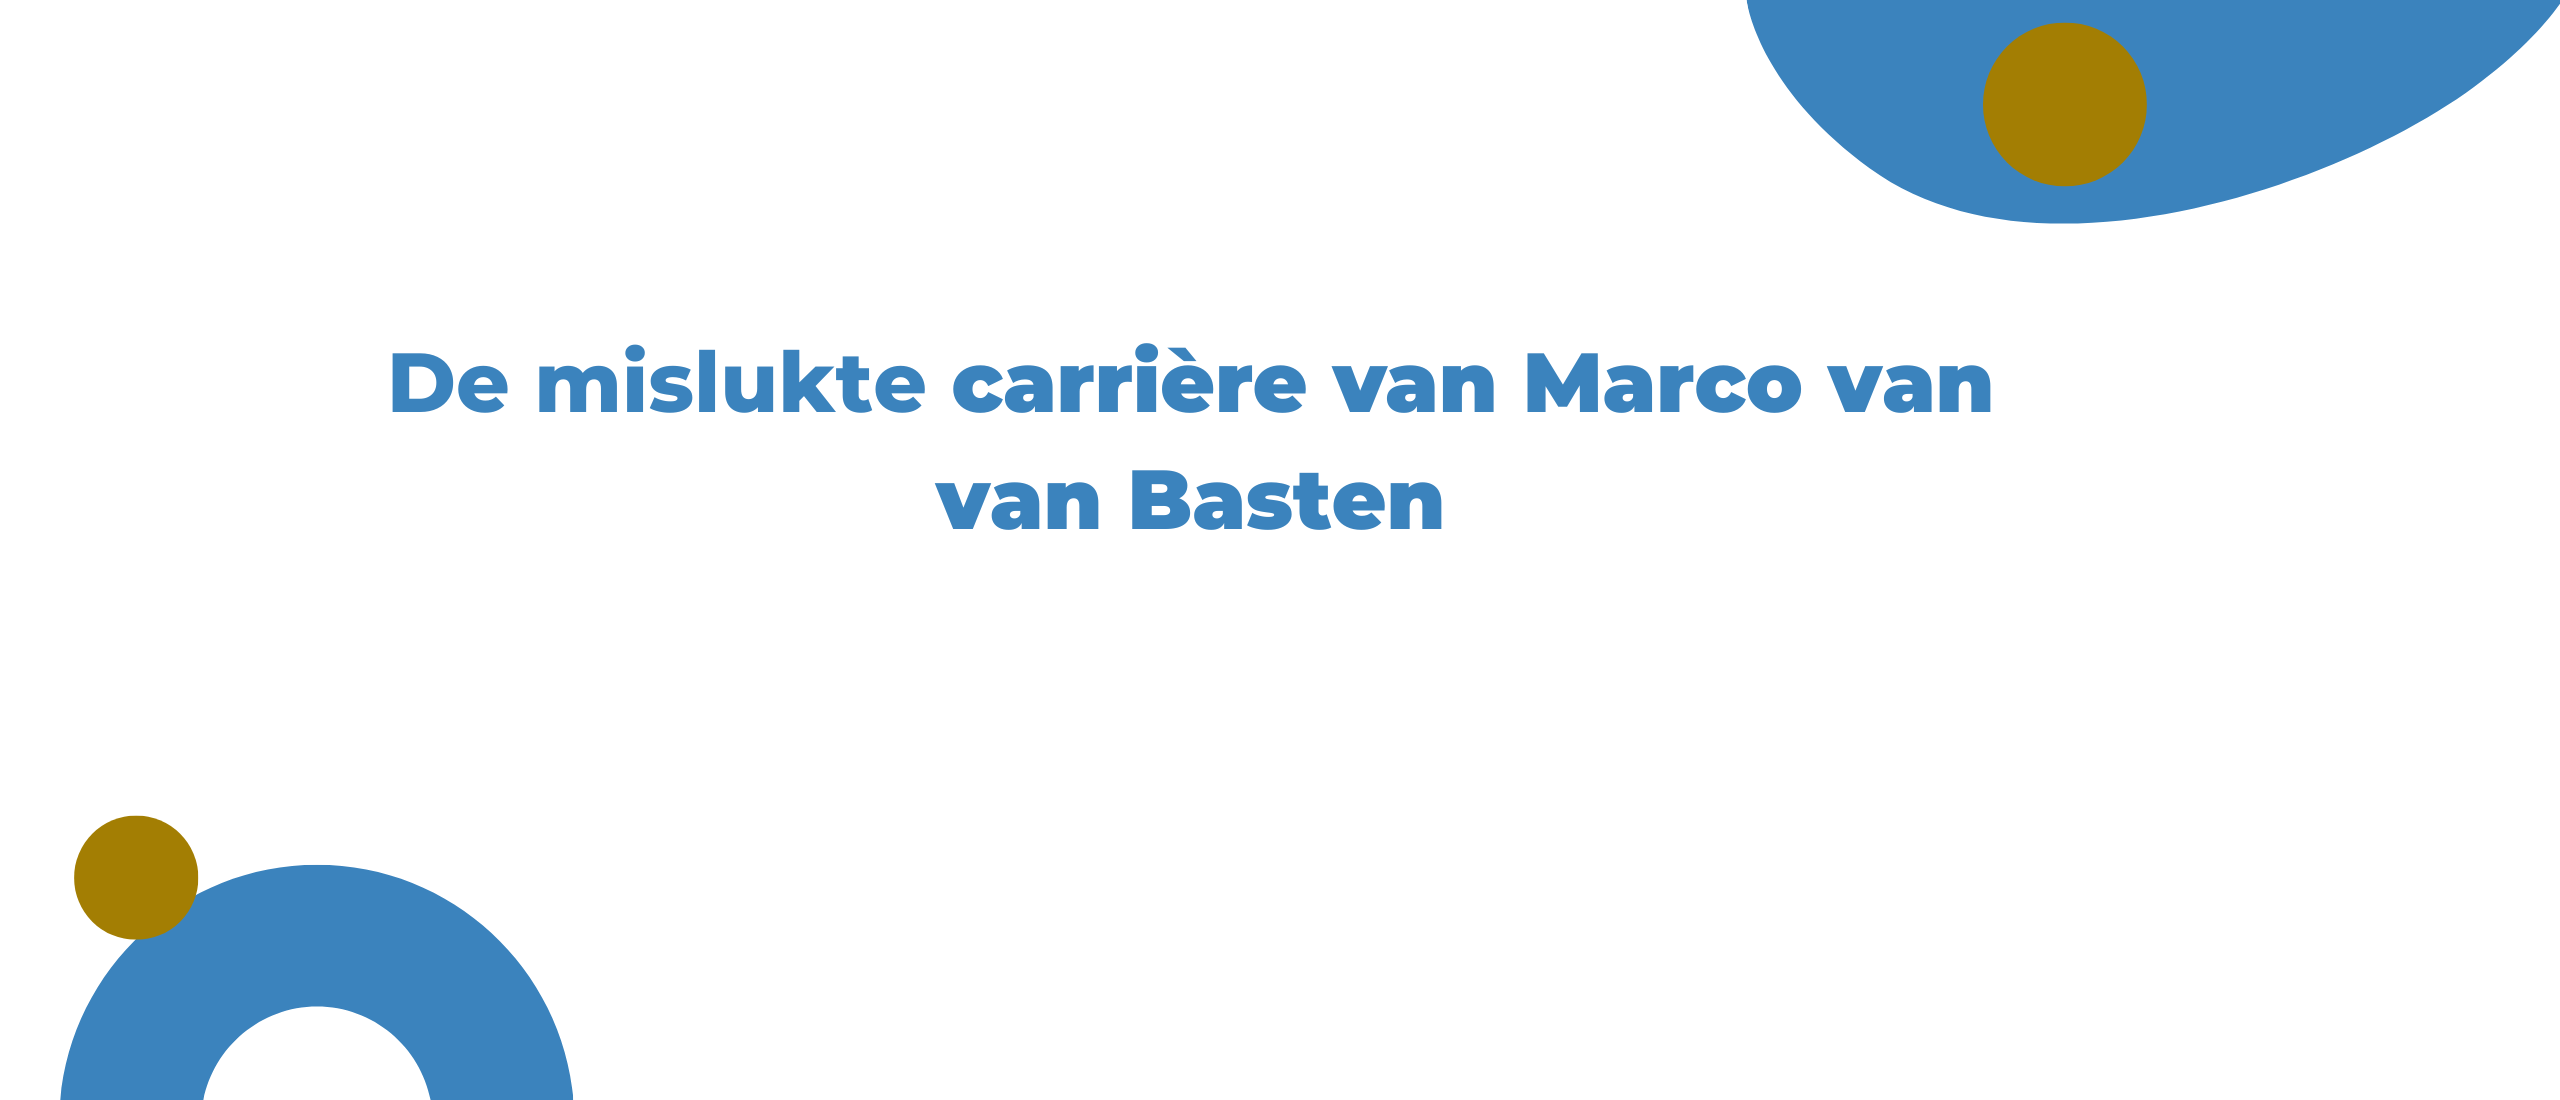 De mislukte carrière van Marco van Basten